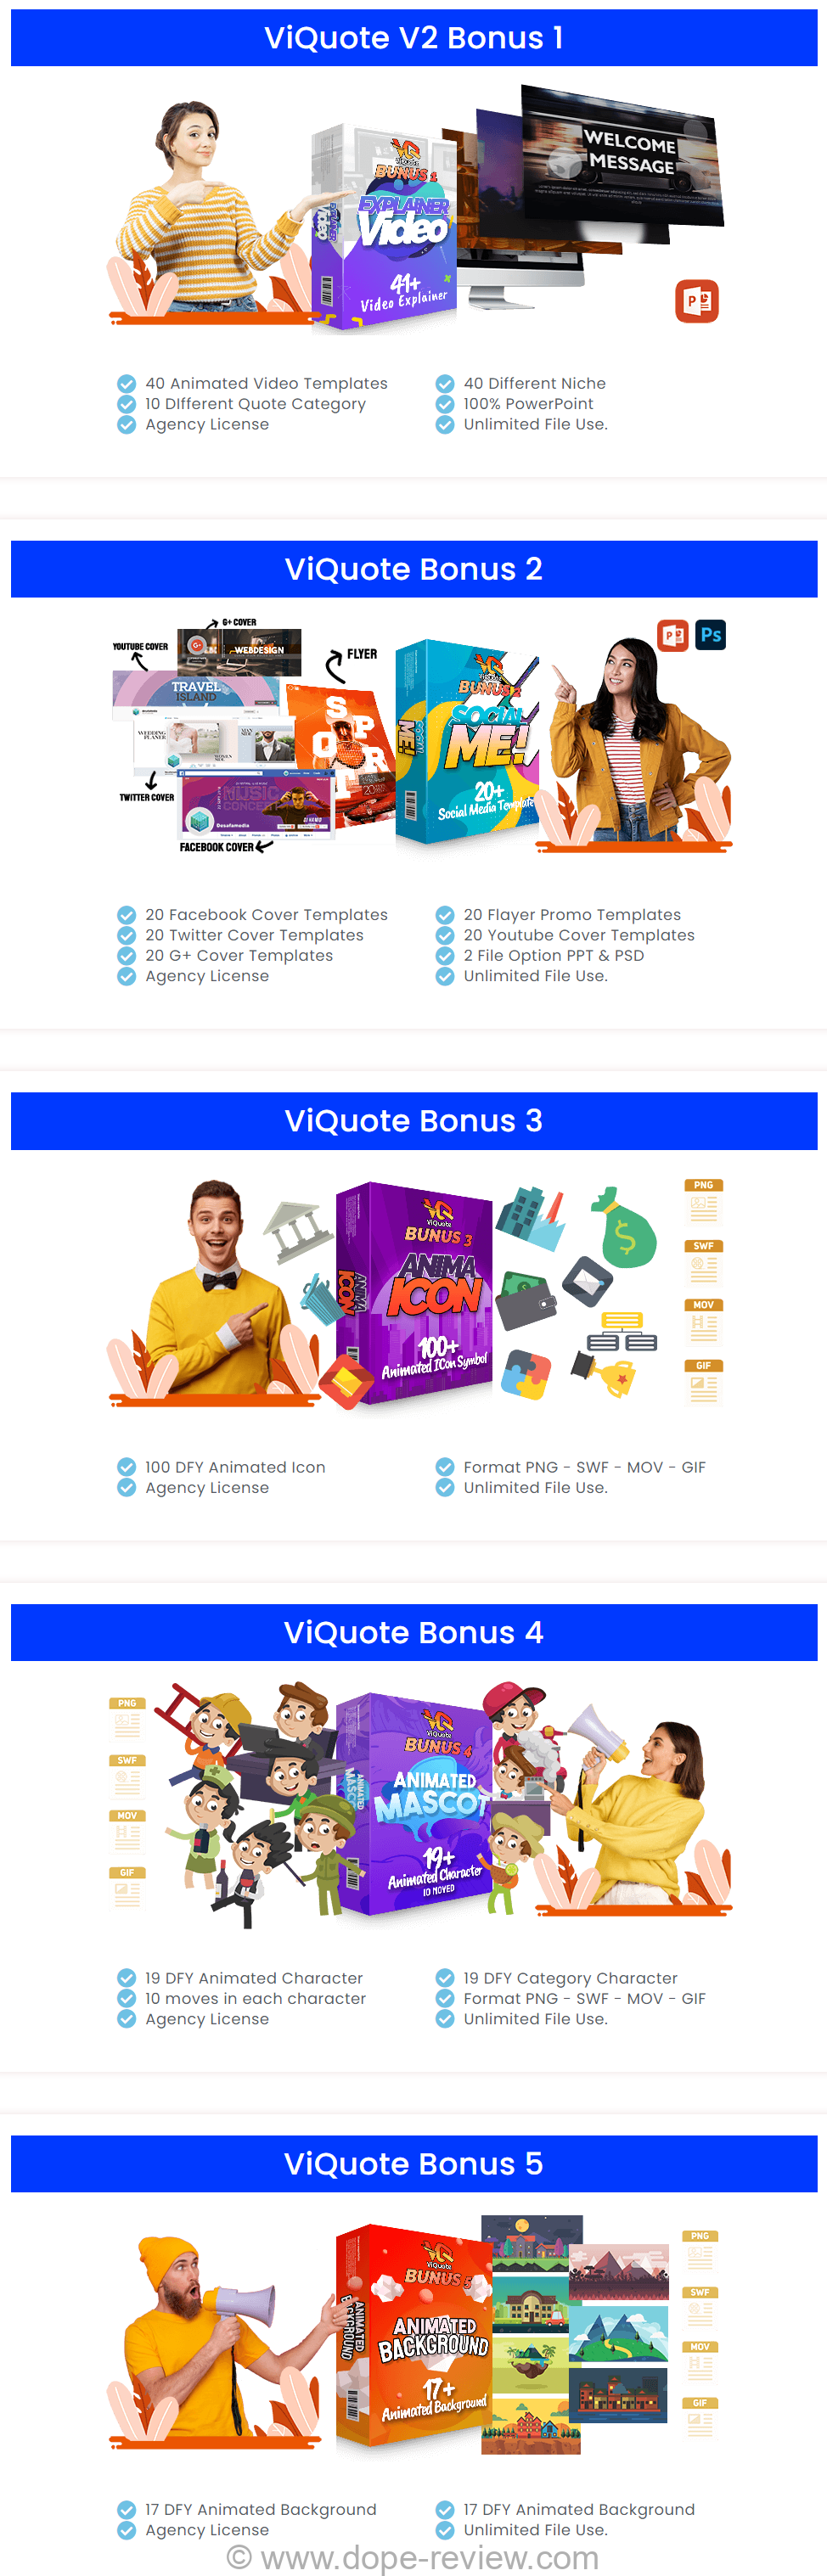 Viquote V2 Bonus